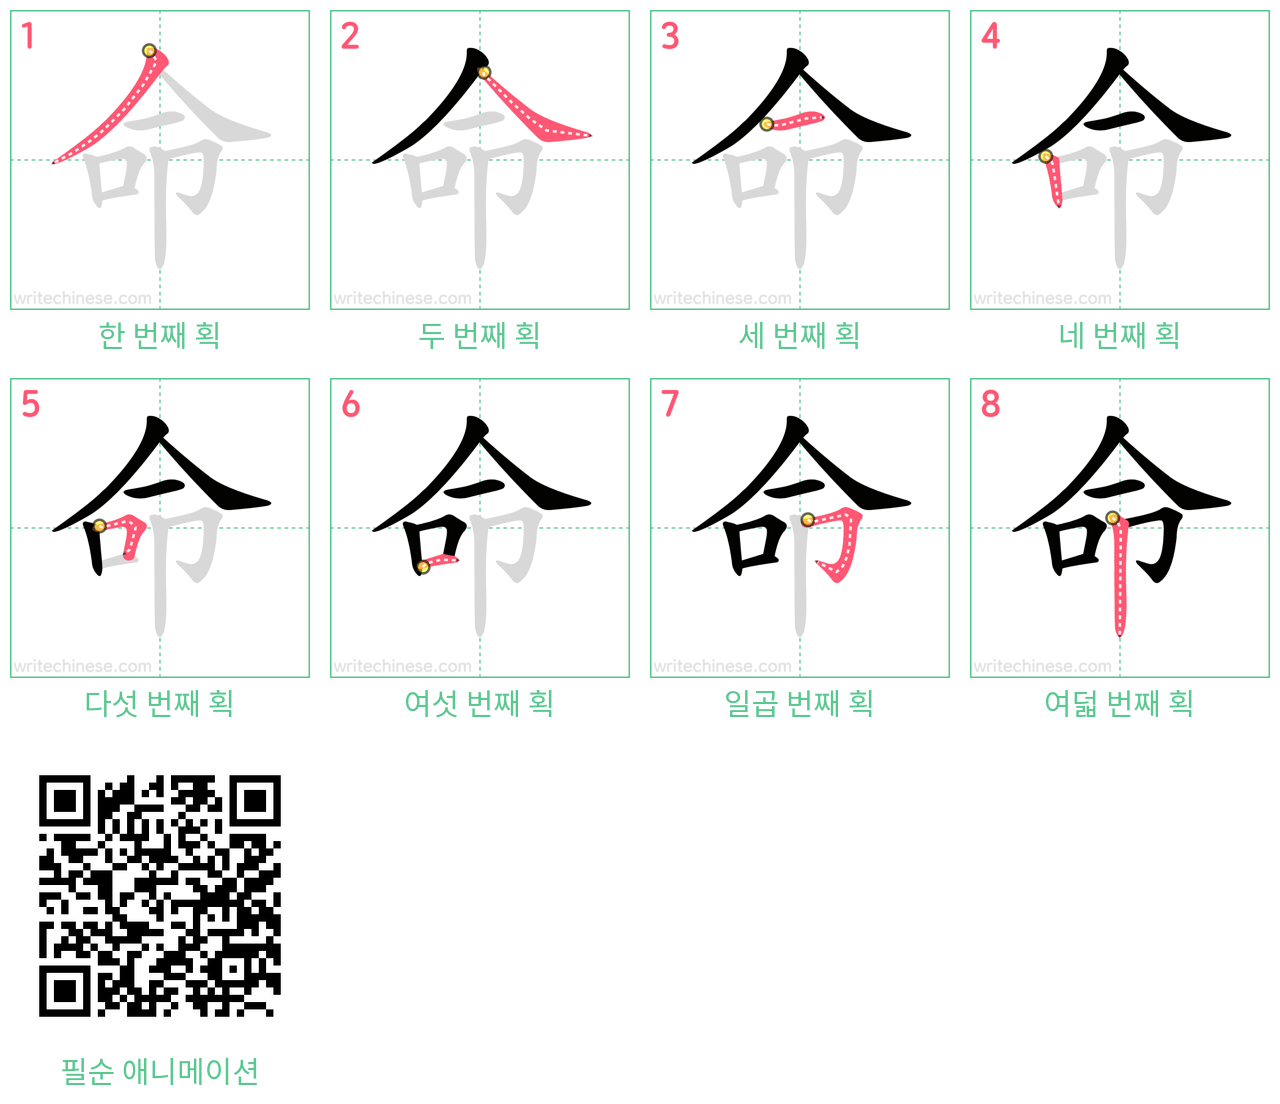 命 step-by-step stroke order diagrams